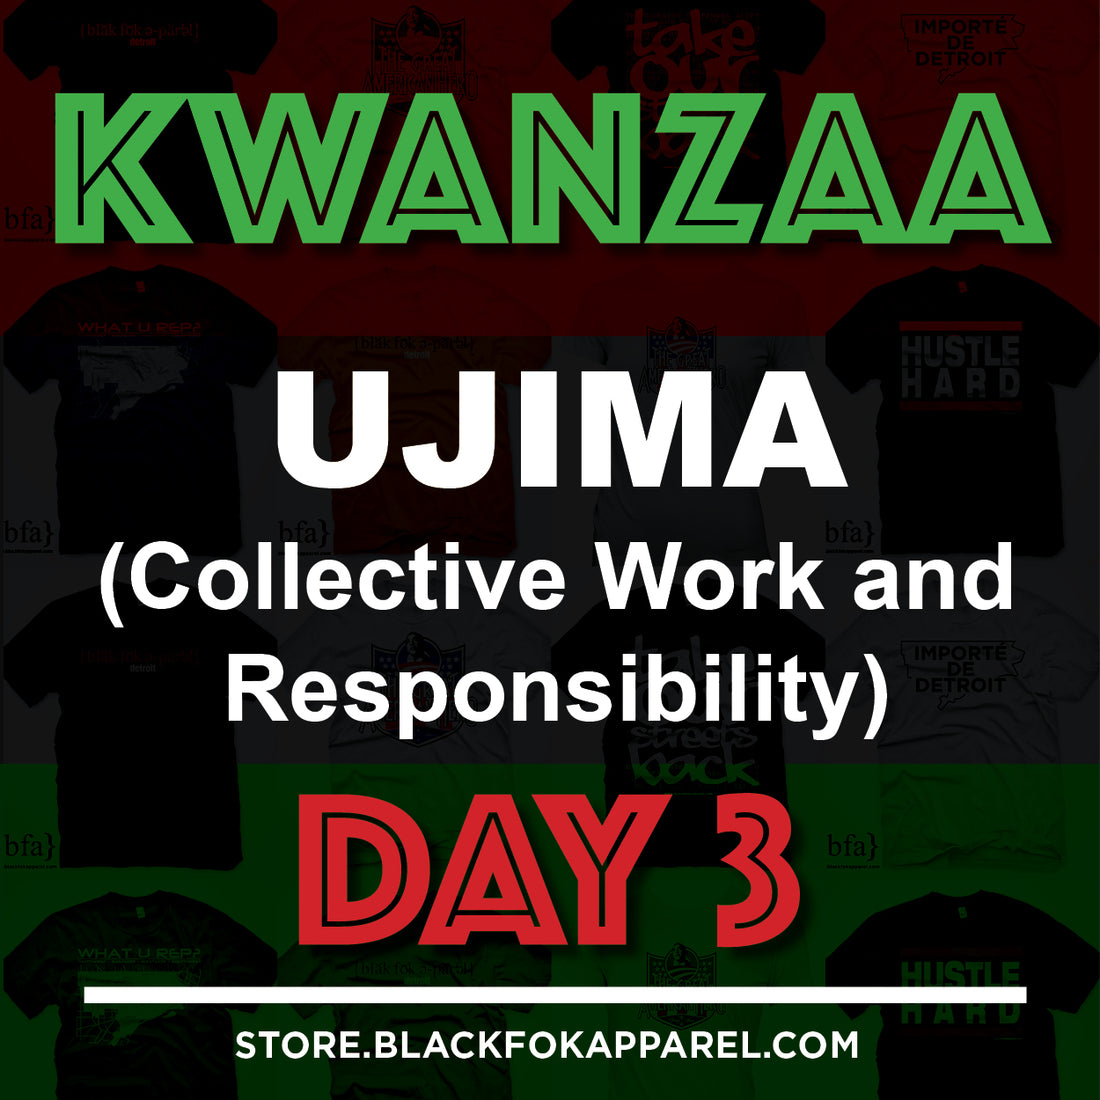 Happy Kwanzaa - Ujima